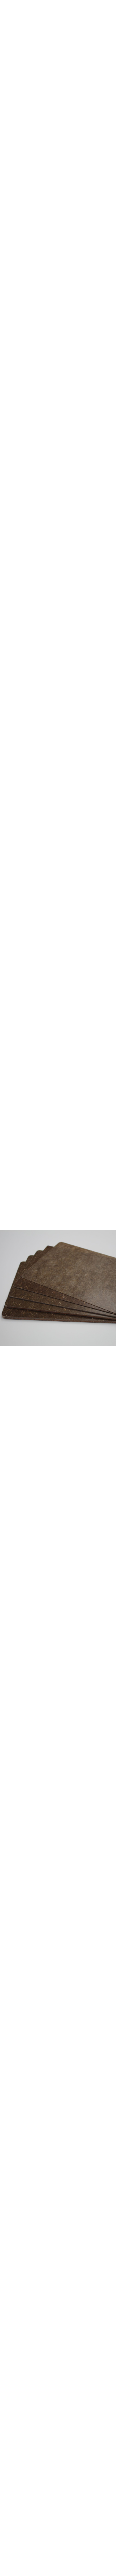 Kairlin monolithique brun en 3.19mm - plaque de 800 x 1200mm